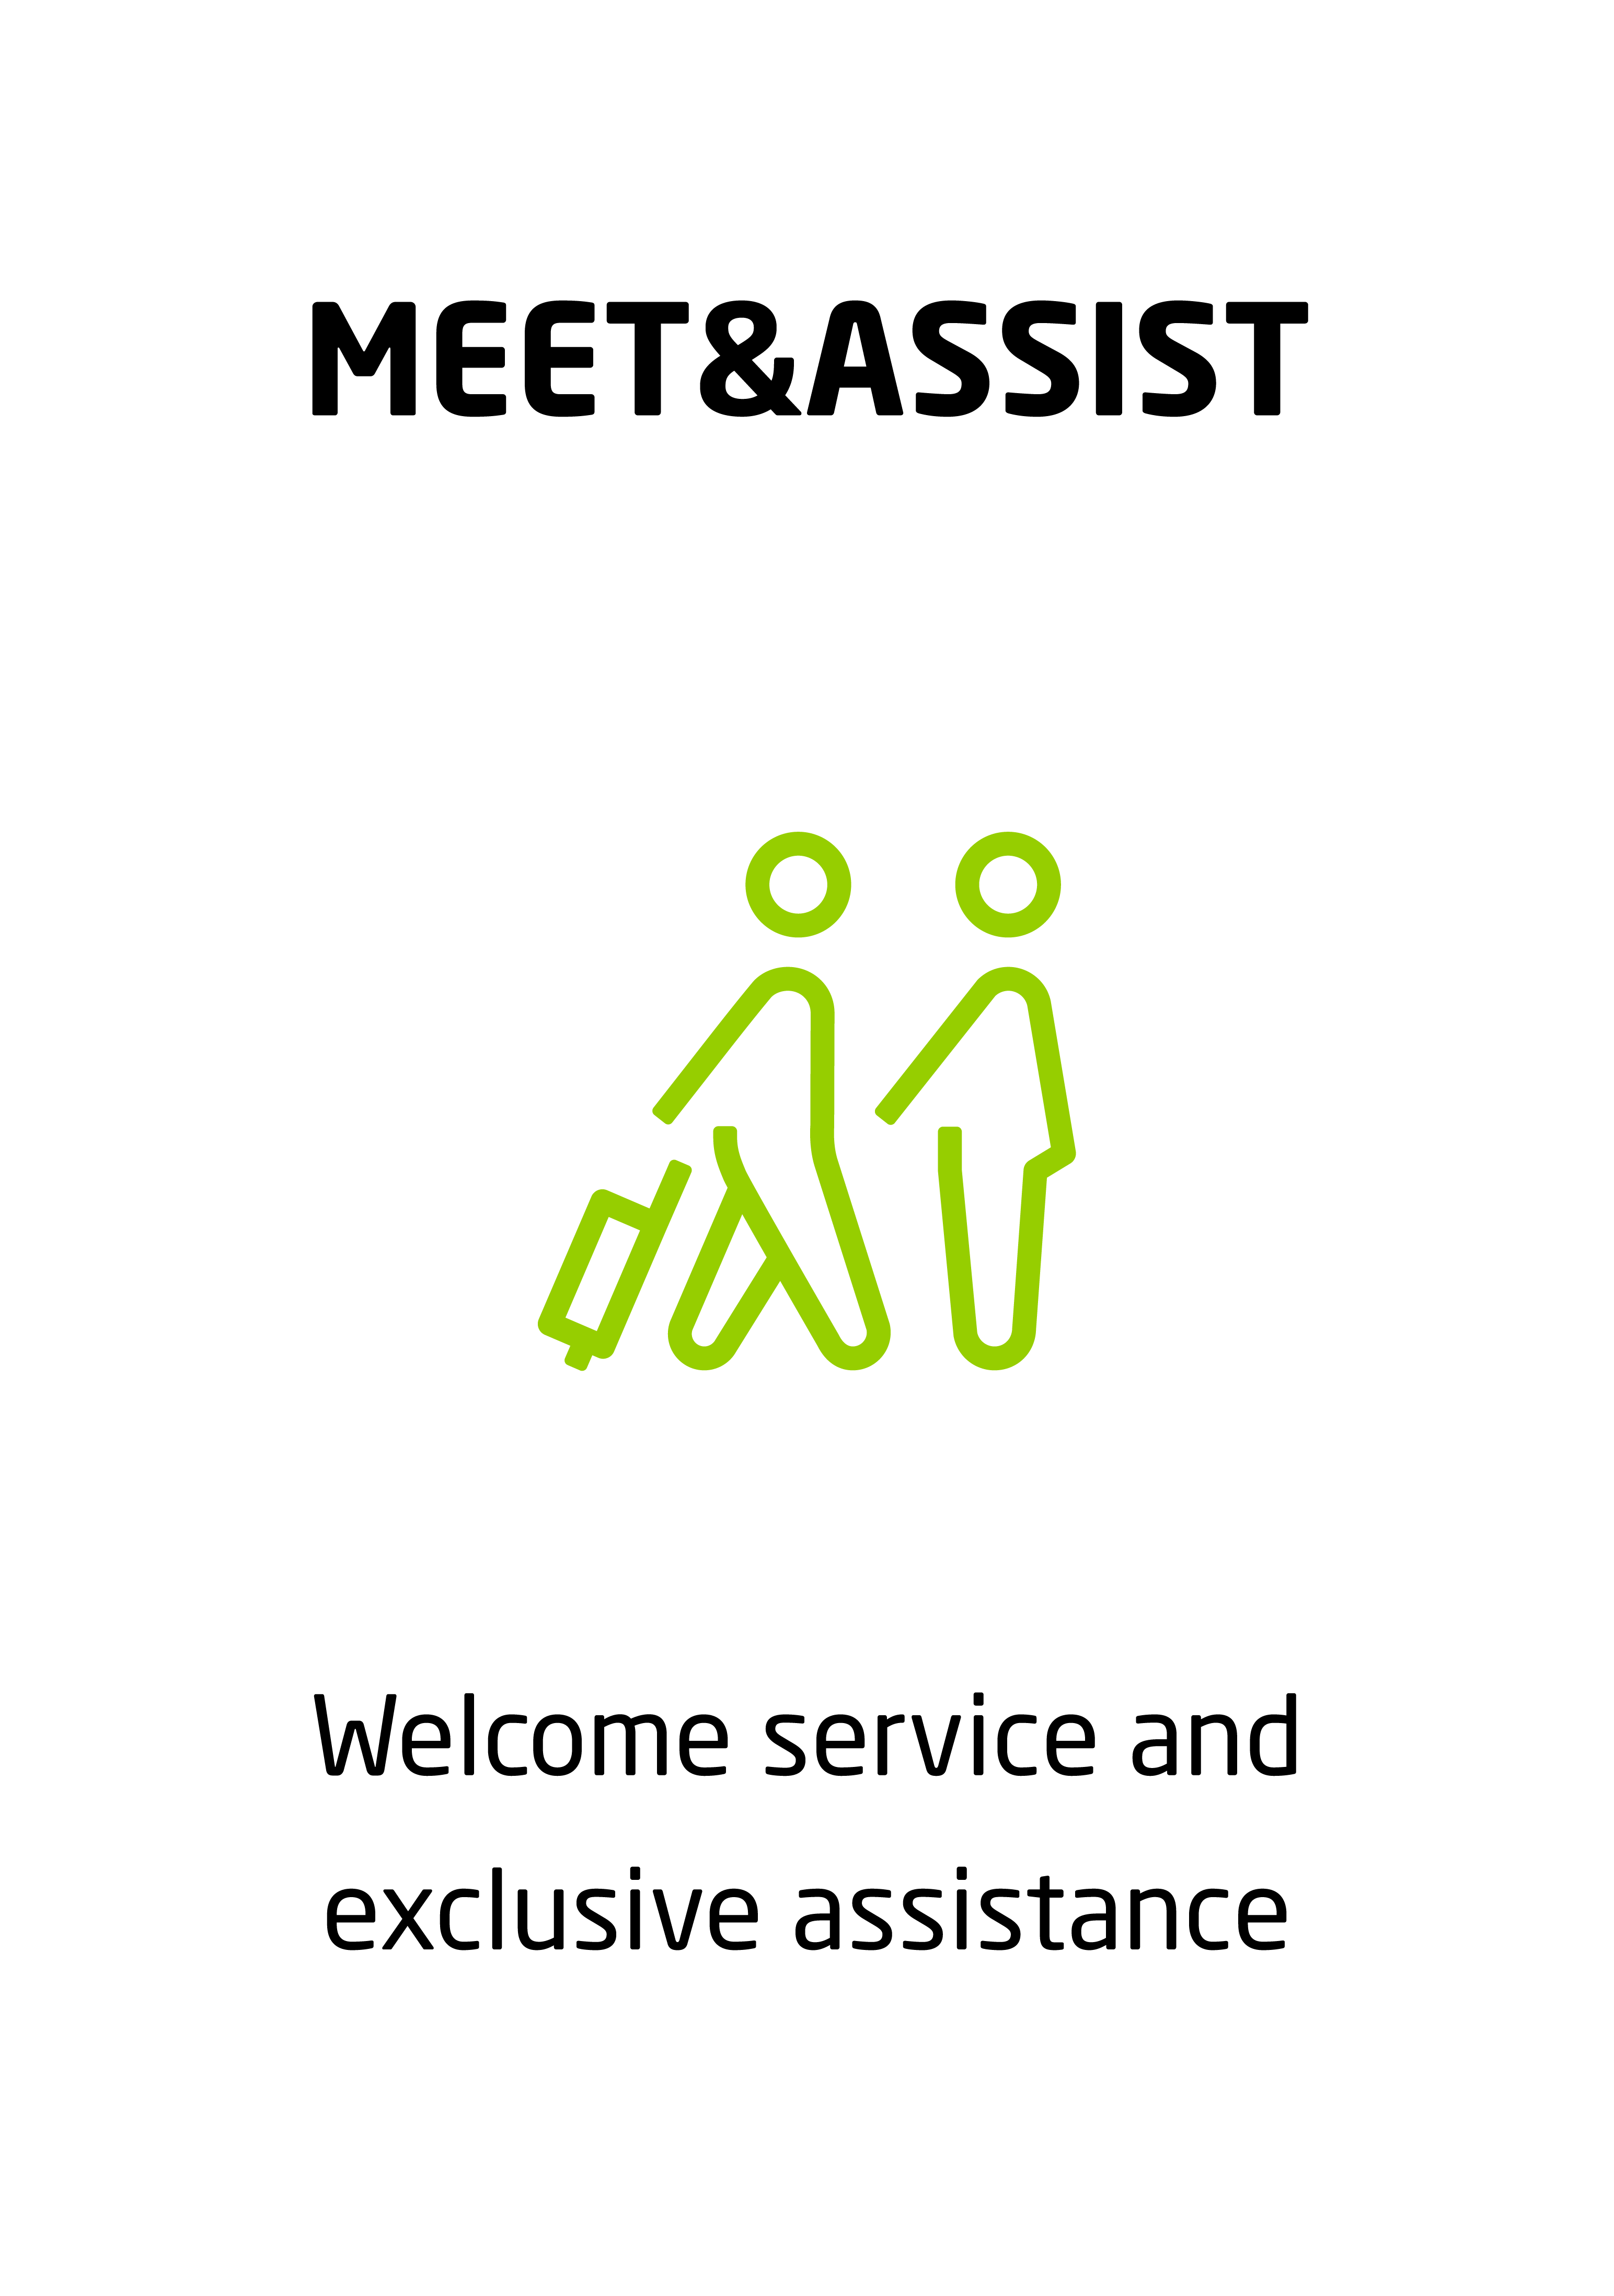 Meet & Assist